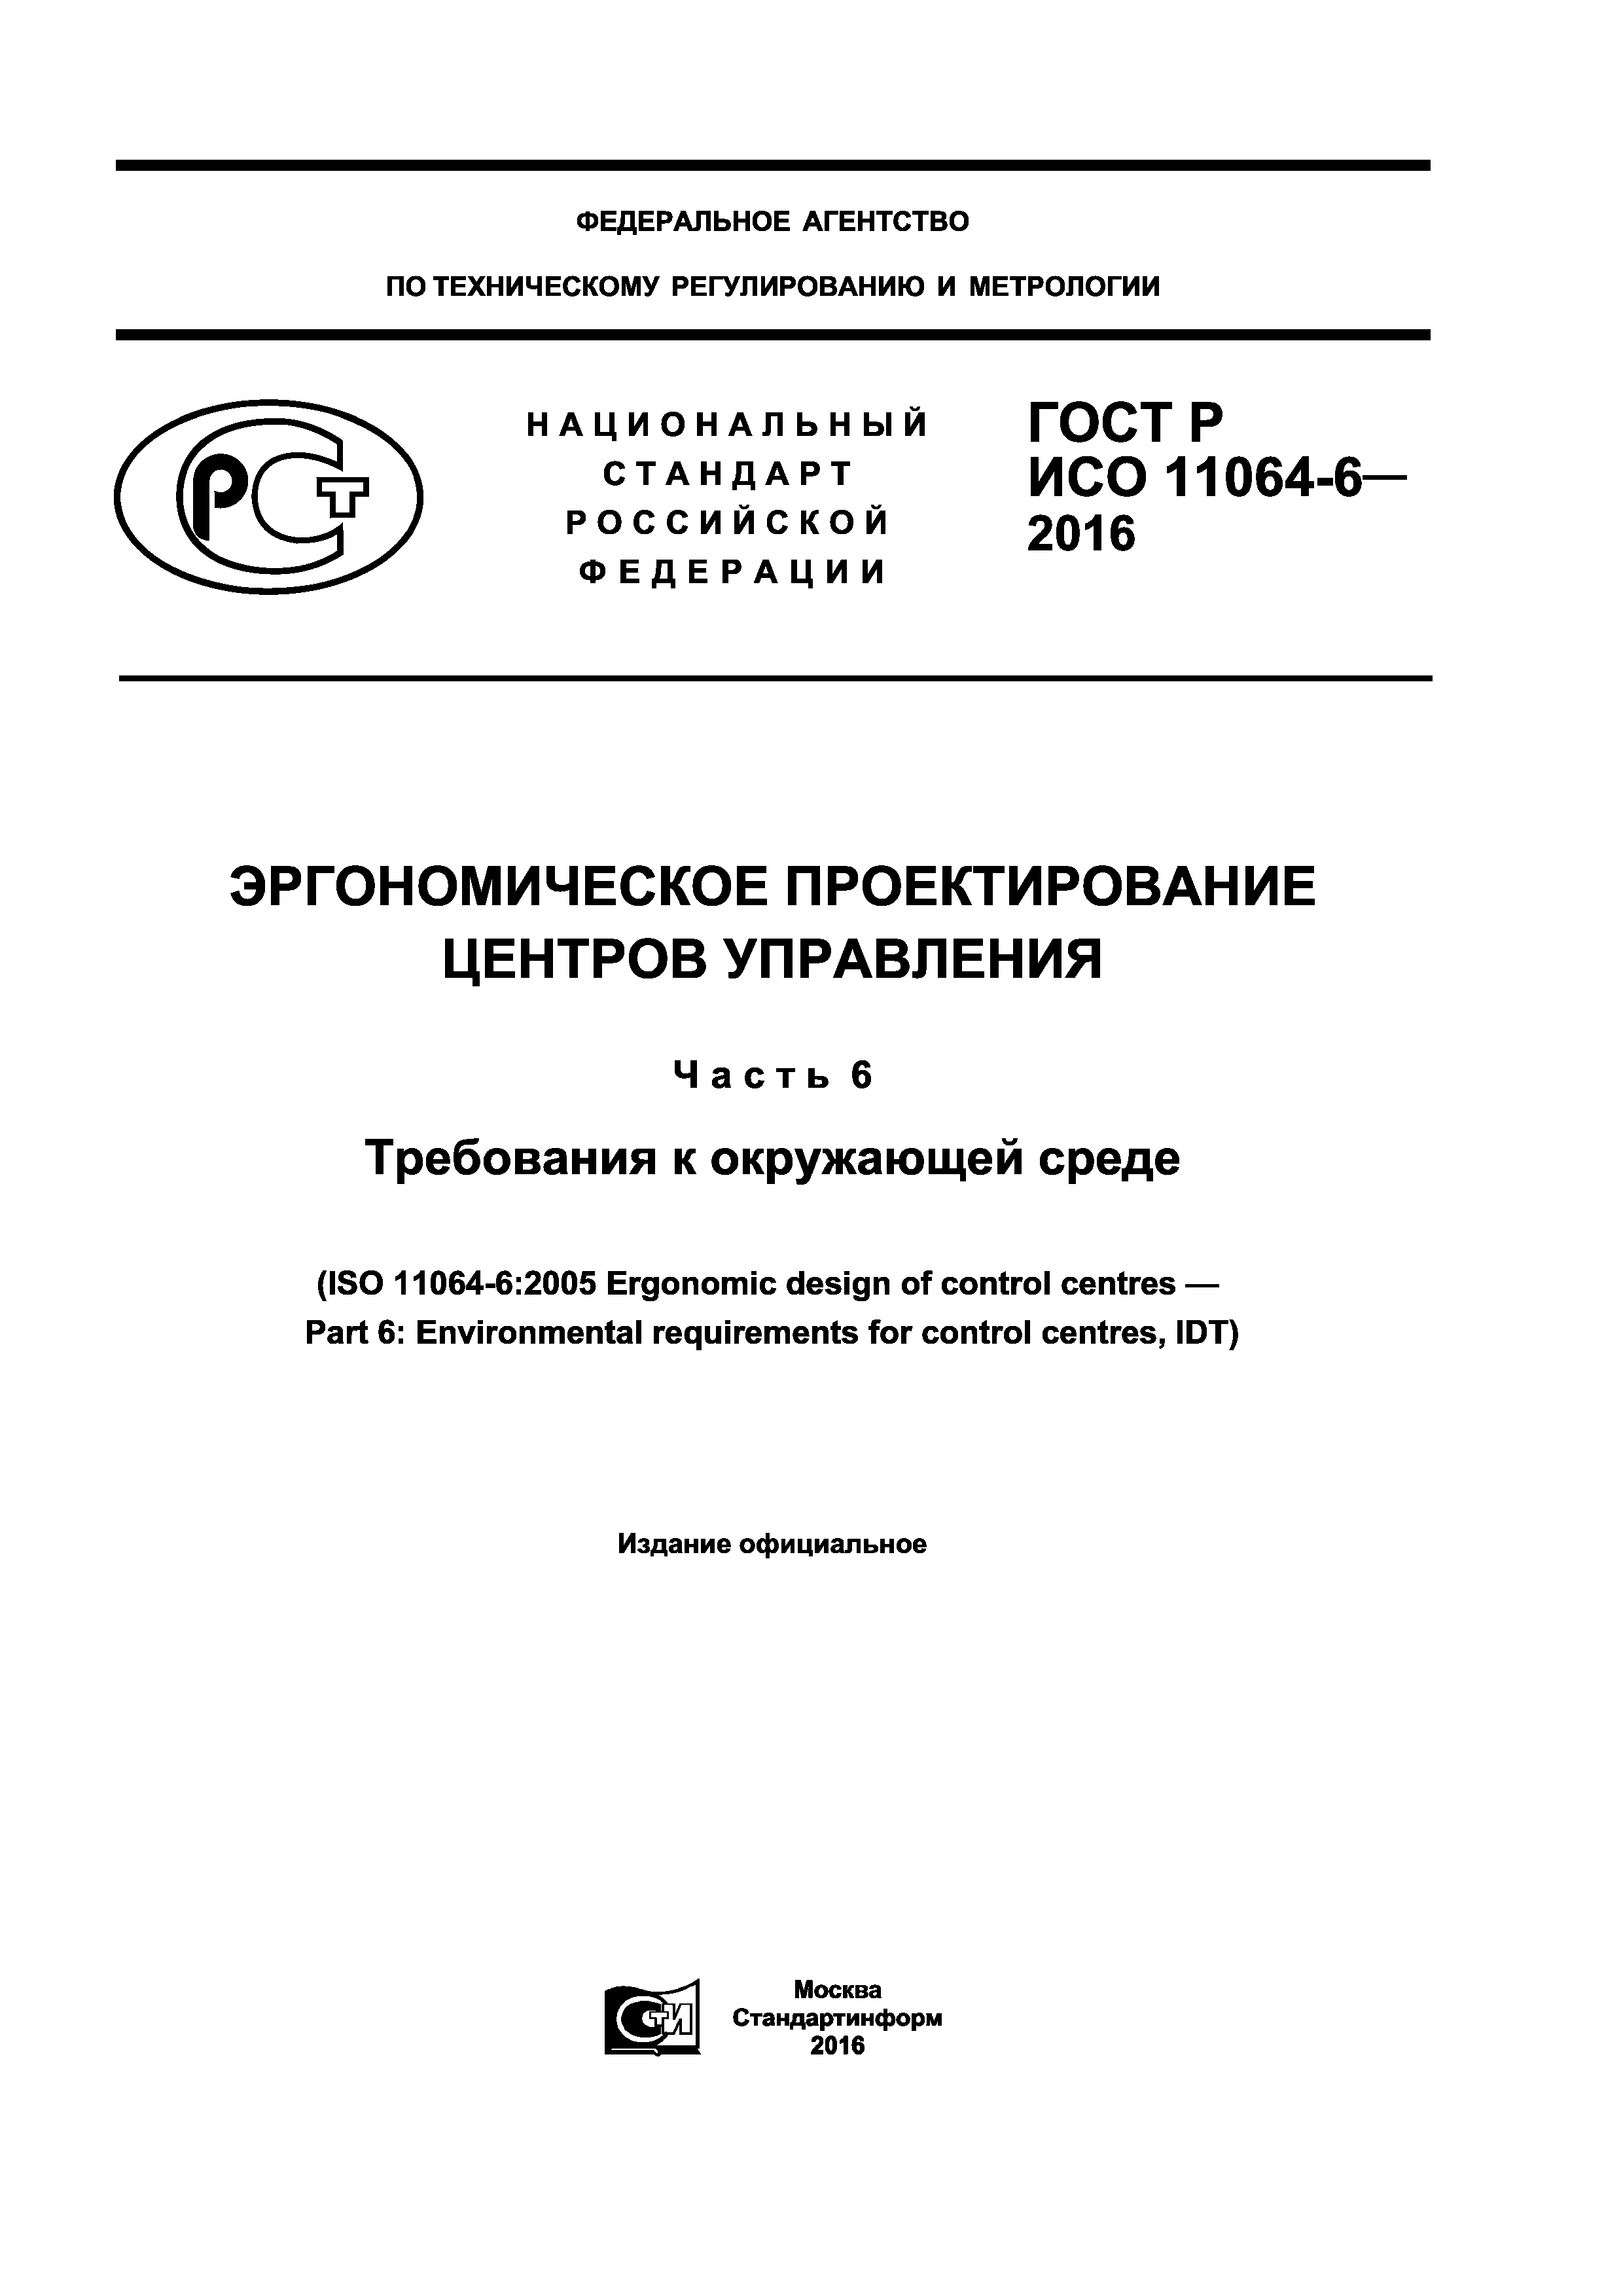 ГОСТ Р ИСО 11064-6-2016